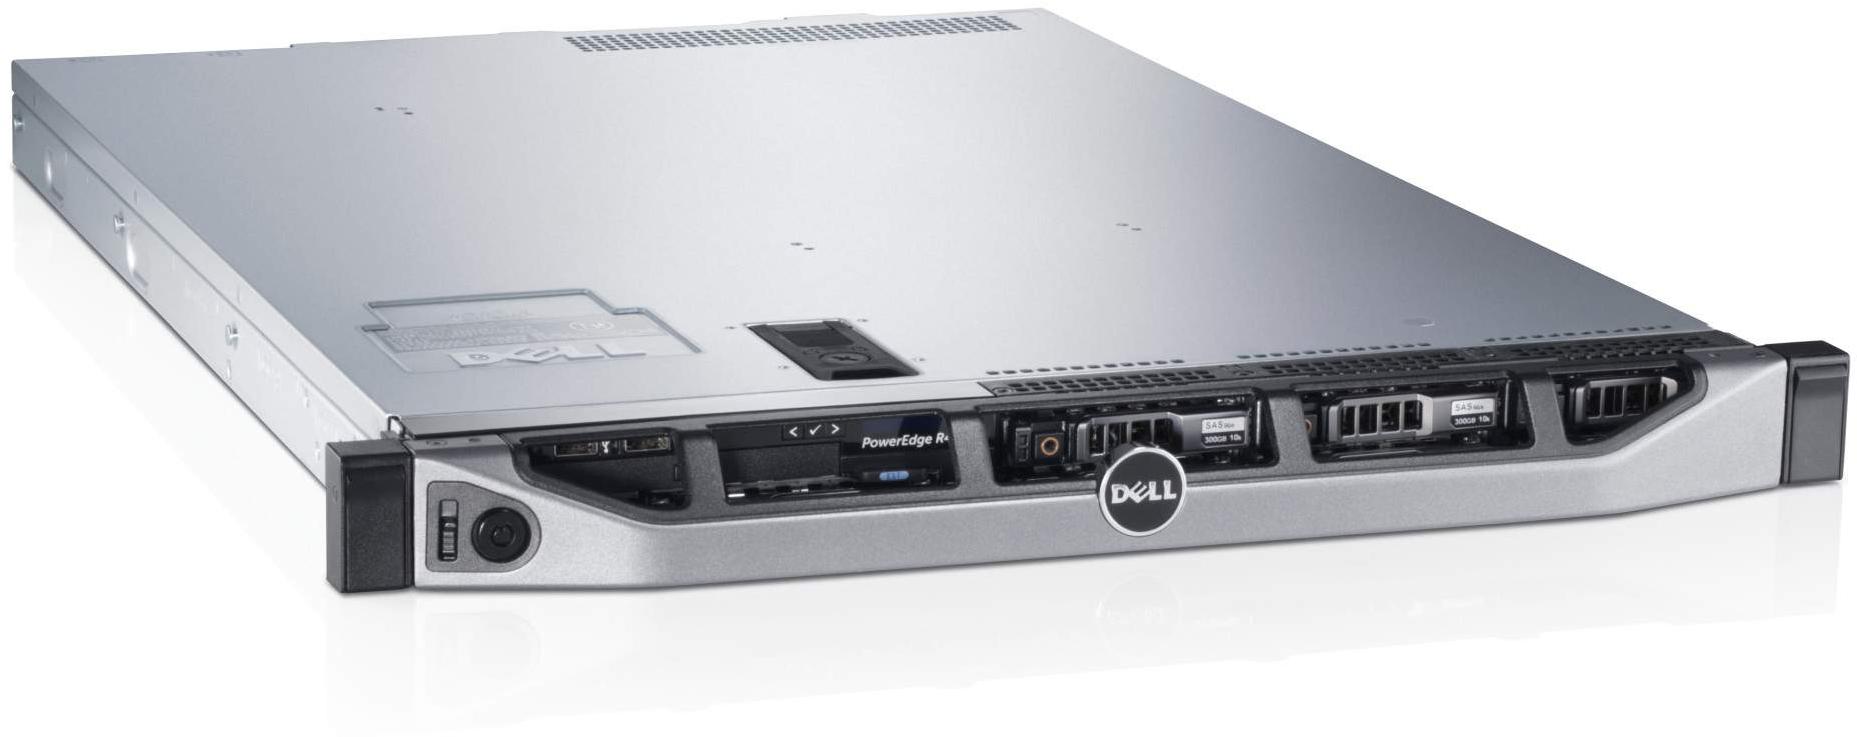     Dell PowerEdge R620 (210-39505/181)  2